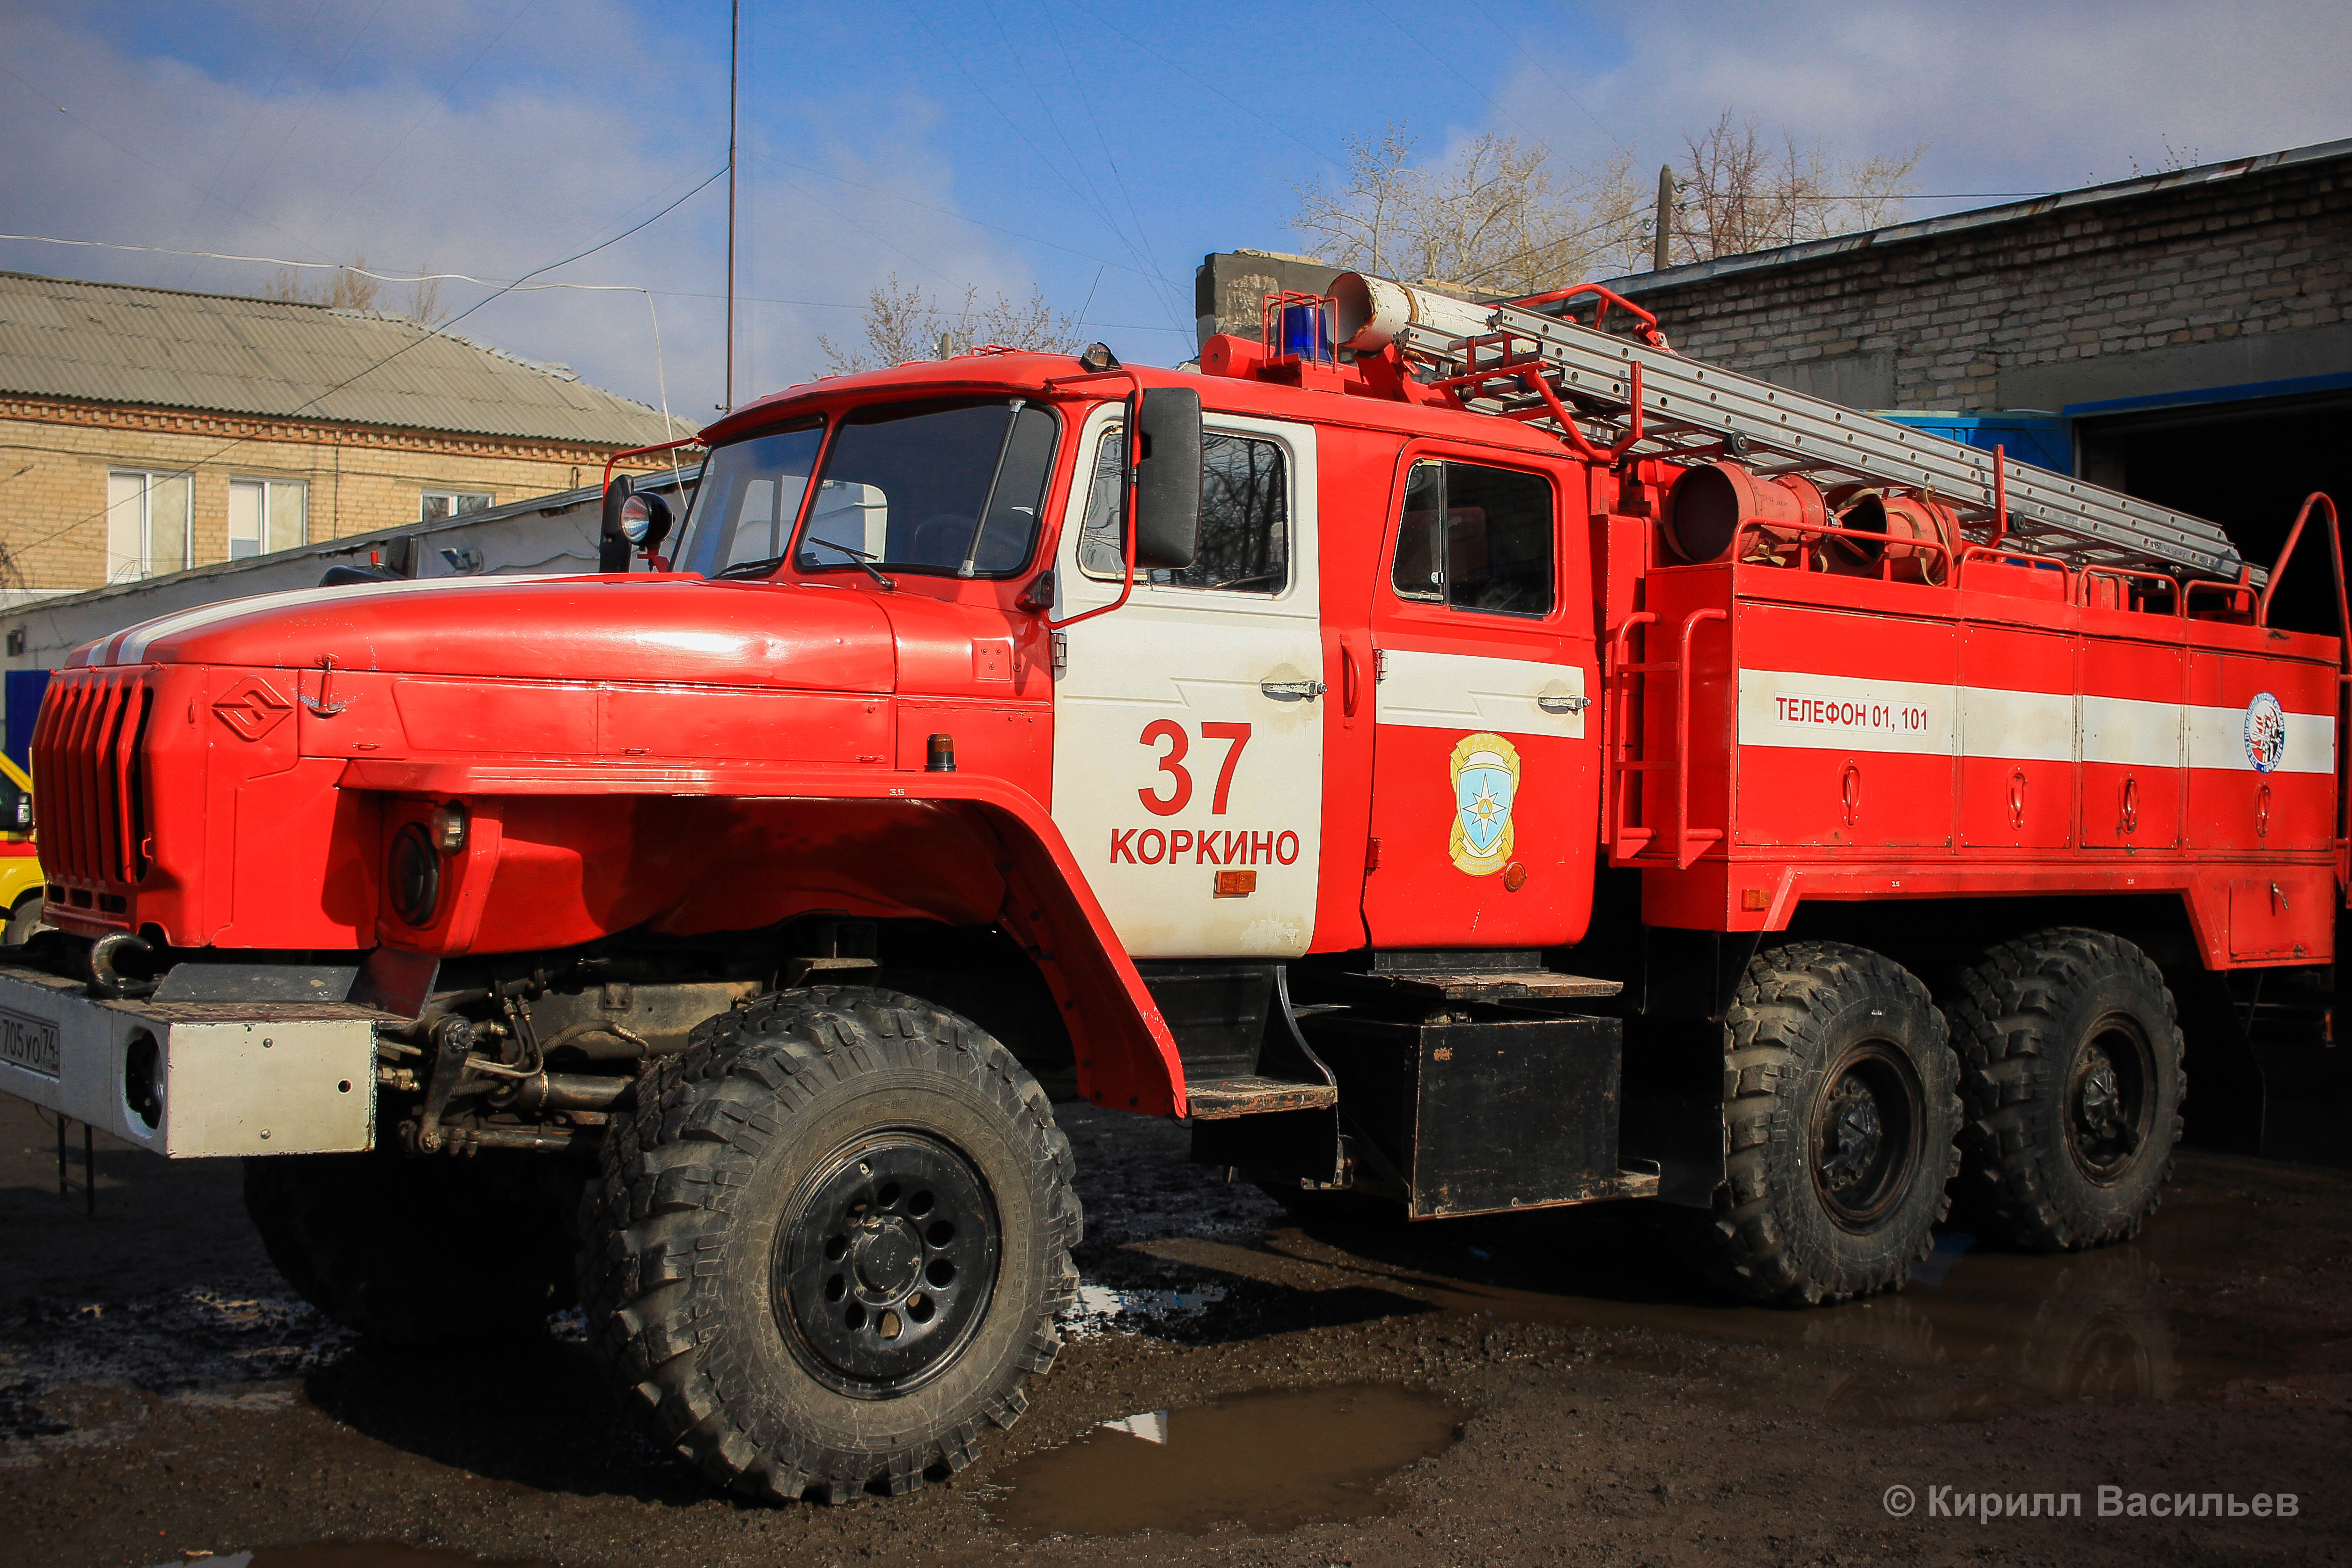 Сегодня День пожарной охраны. Как укомплектована коркинская 37-я пожарно-спасательная часть?